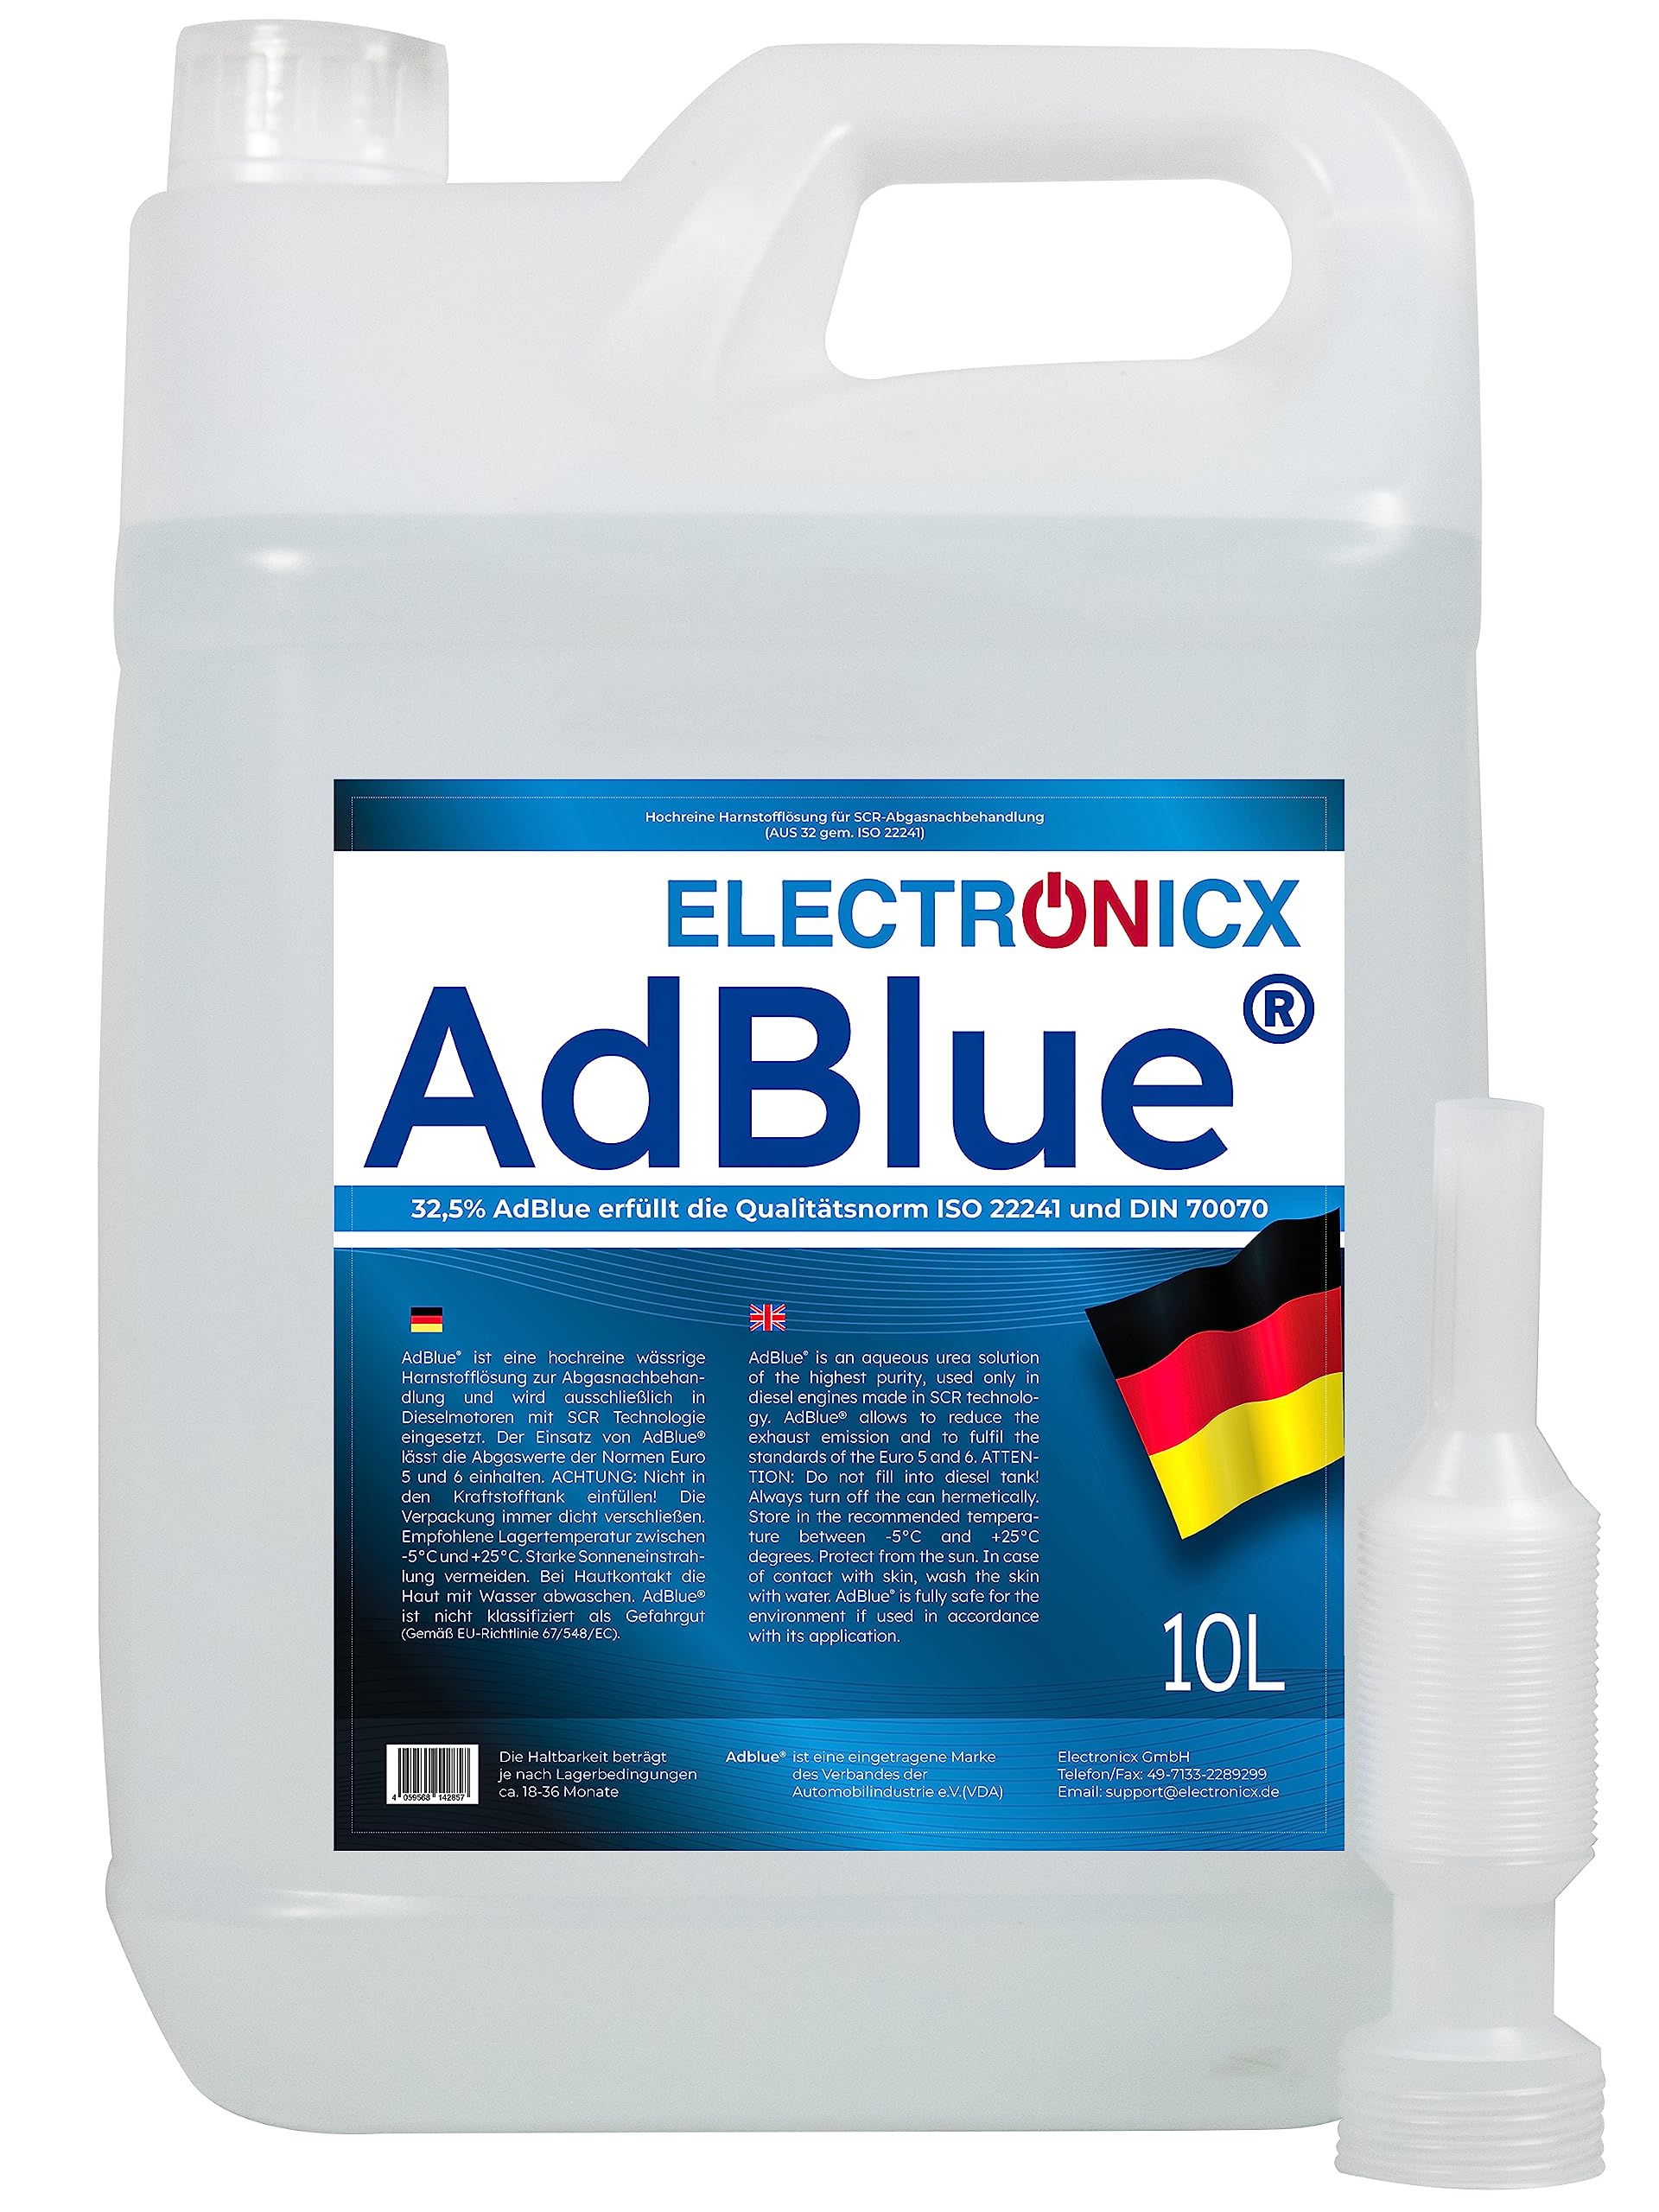 Electronicx AdBlue 50 Liter 5 X 10L für Diesel Kanister Harnstofflösung gemäß ISO 22241/1 DIN 70070 VDA lizenziert für SCR-Abgasnachbehandlung Ad Blue Adblue kaufen einfüllstutzen adblue